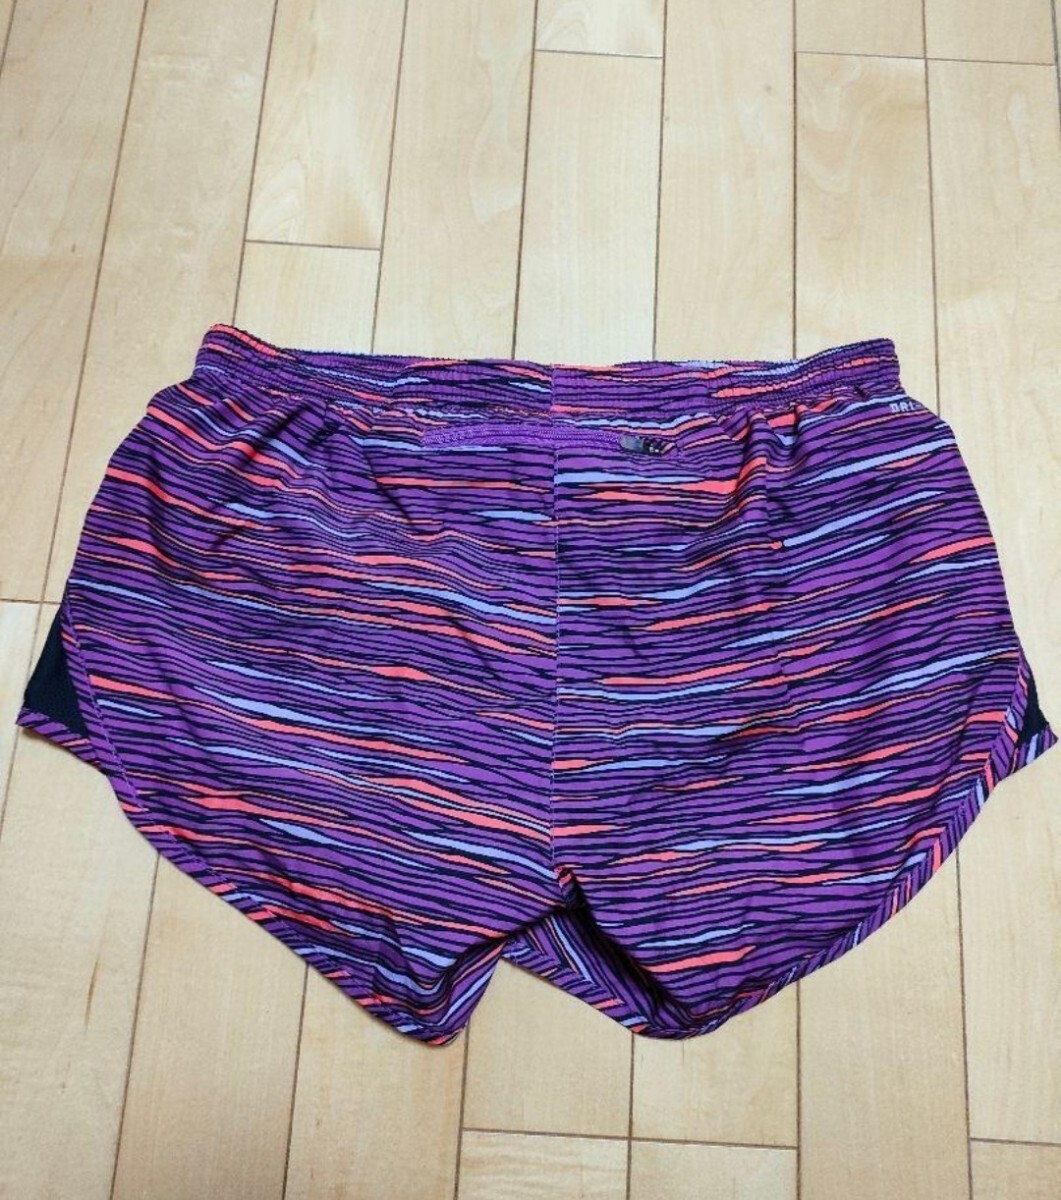 [ прекрасный товар ] Nike NIKE женский бег брюки jo серебристый g брюки S размер фиолетовый 